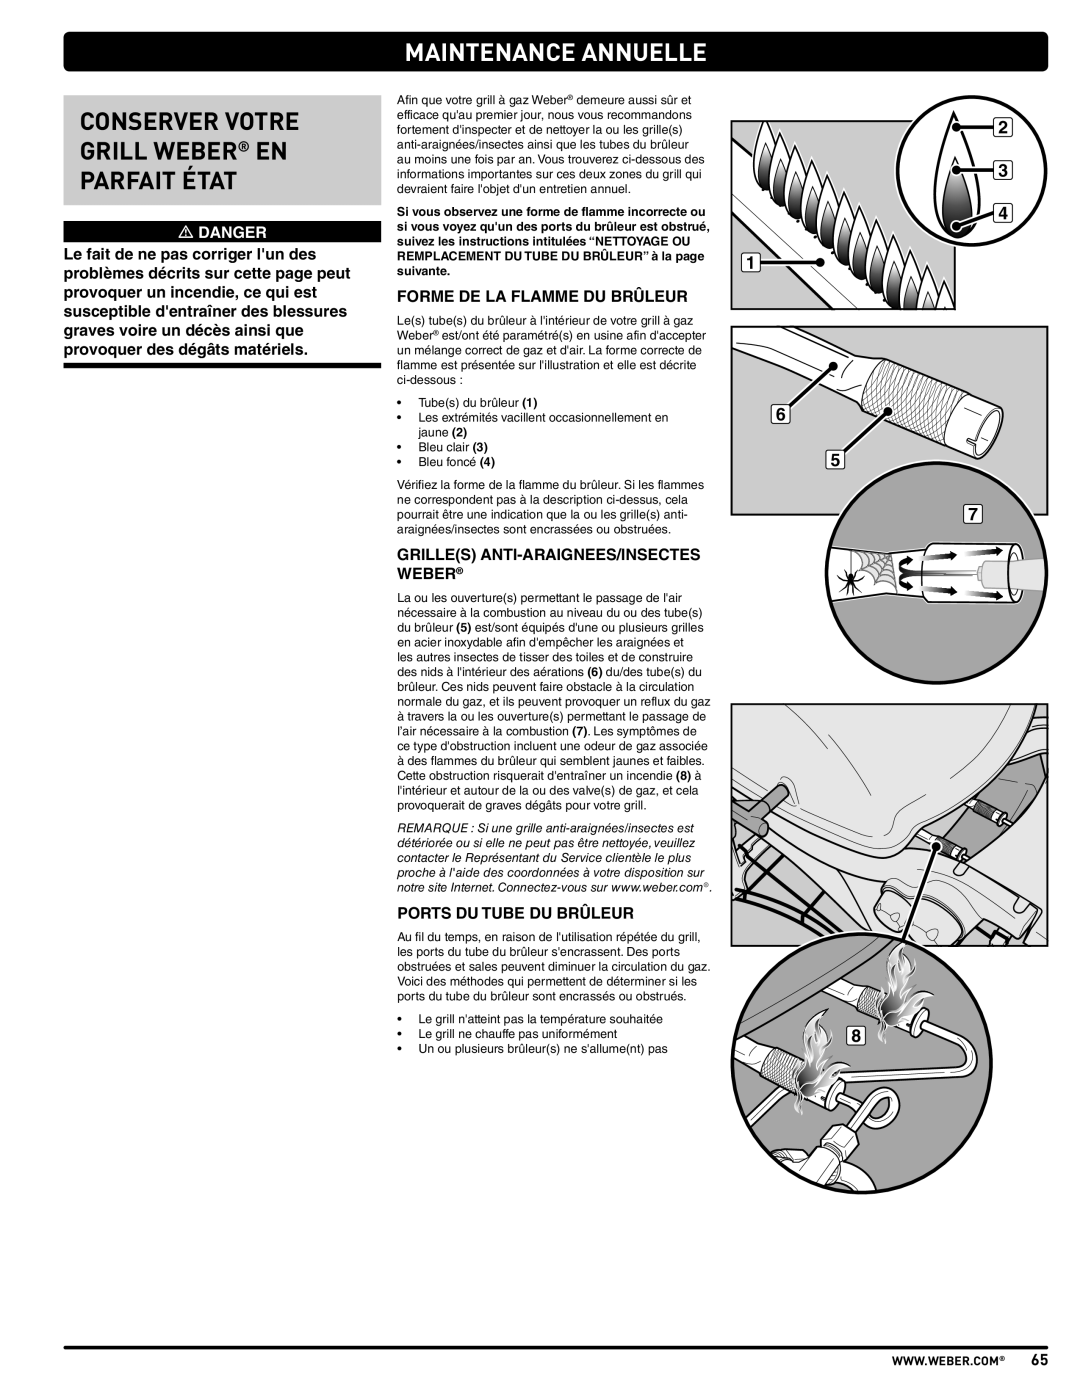 Weber 57515 manual Maintenance Annuelle, Conserver Votre Grill Weber En Parfait État, m DANGER 